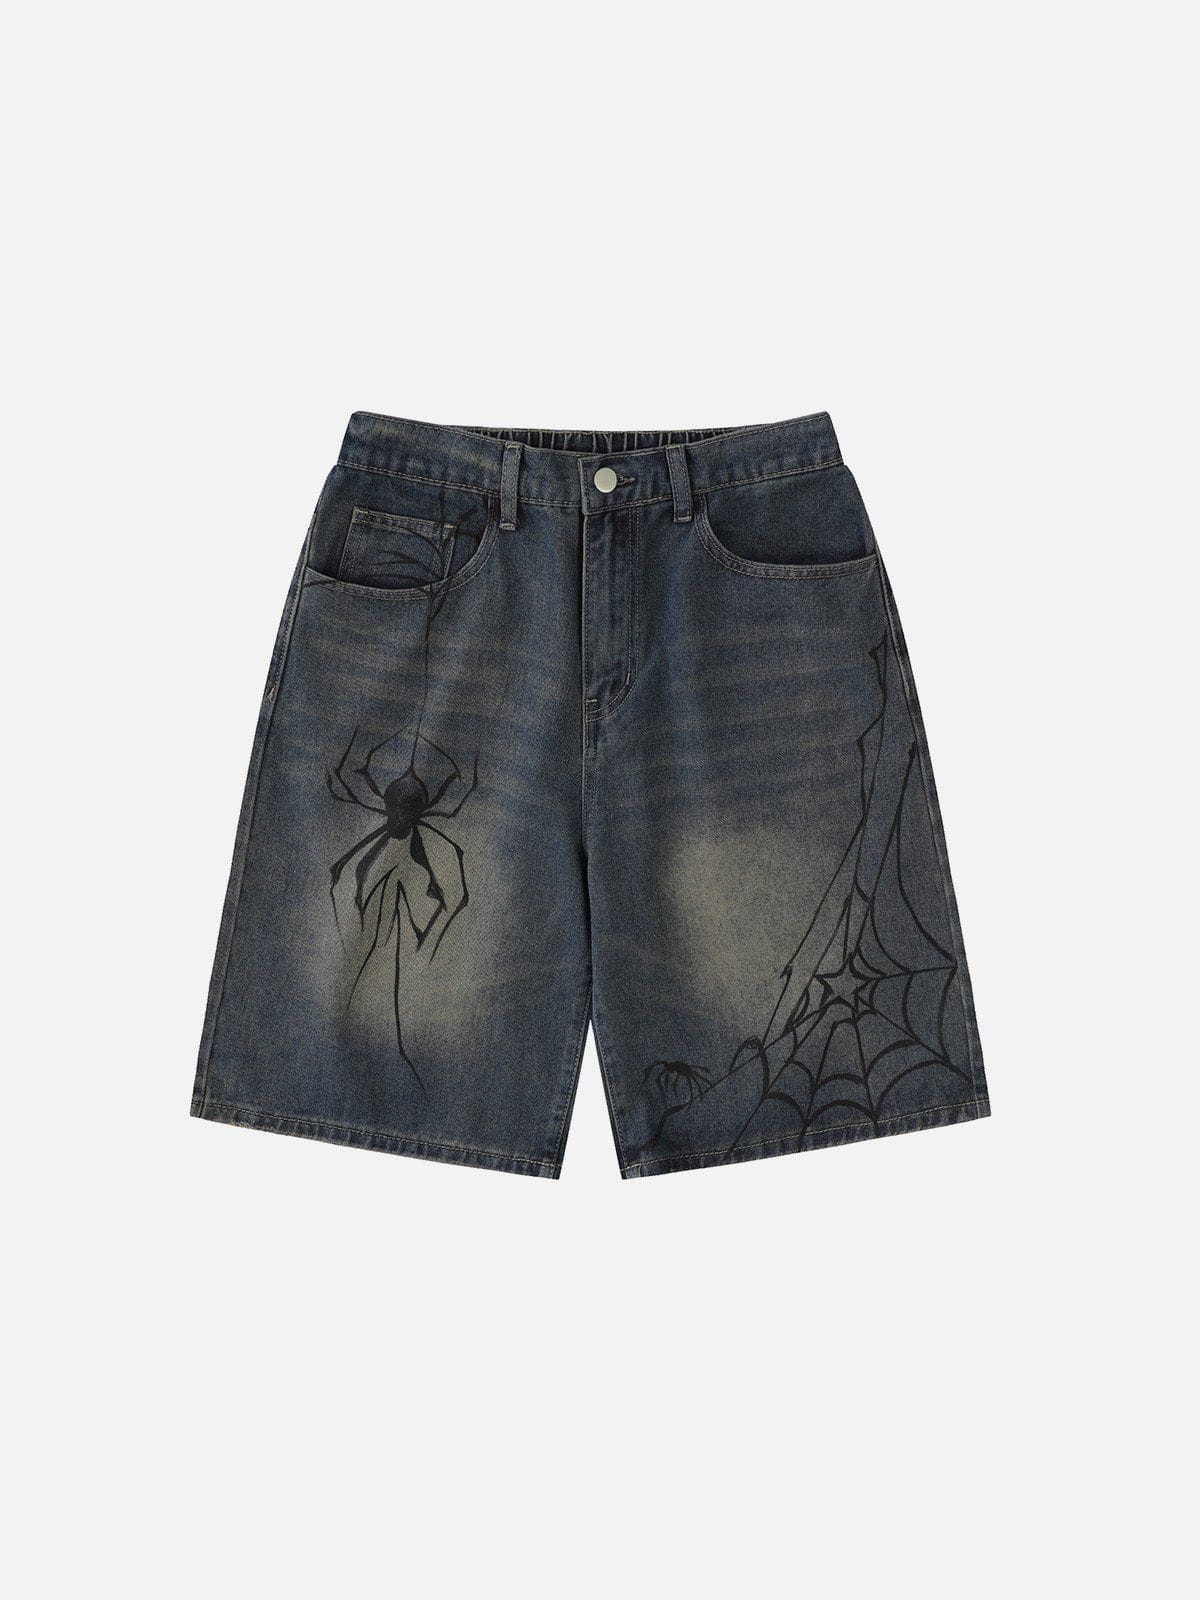 We Love Street Spider Denim Shorts